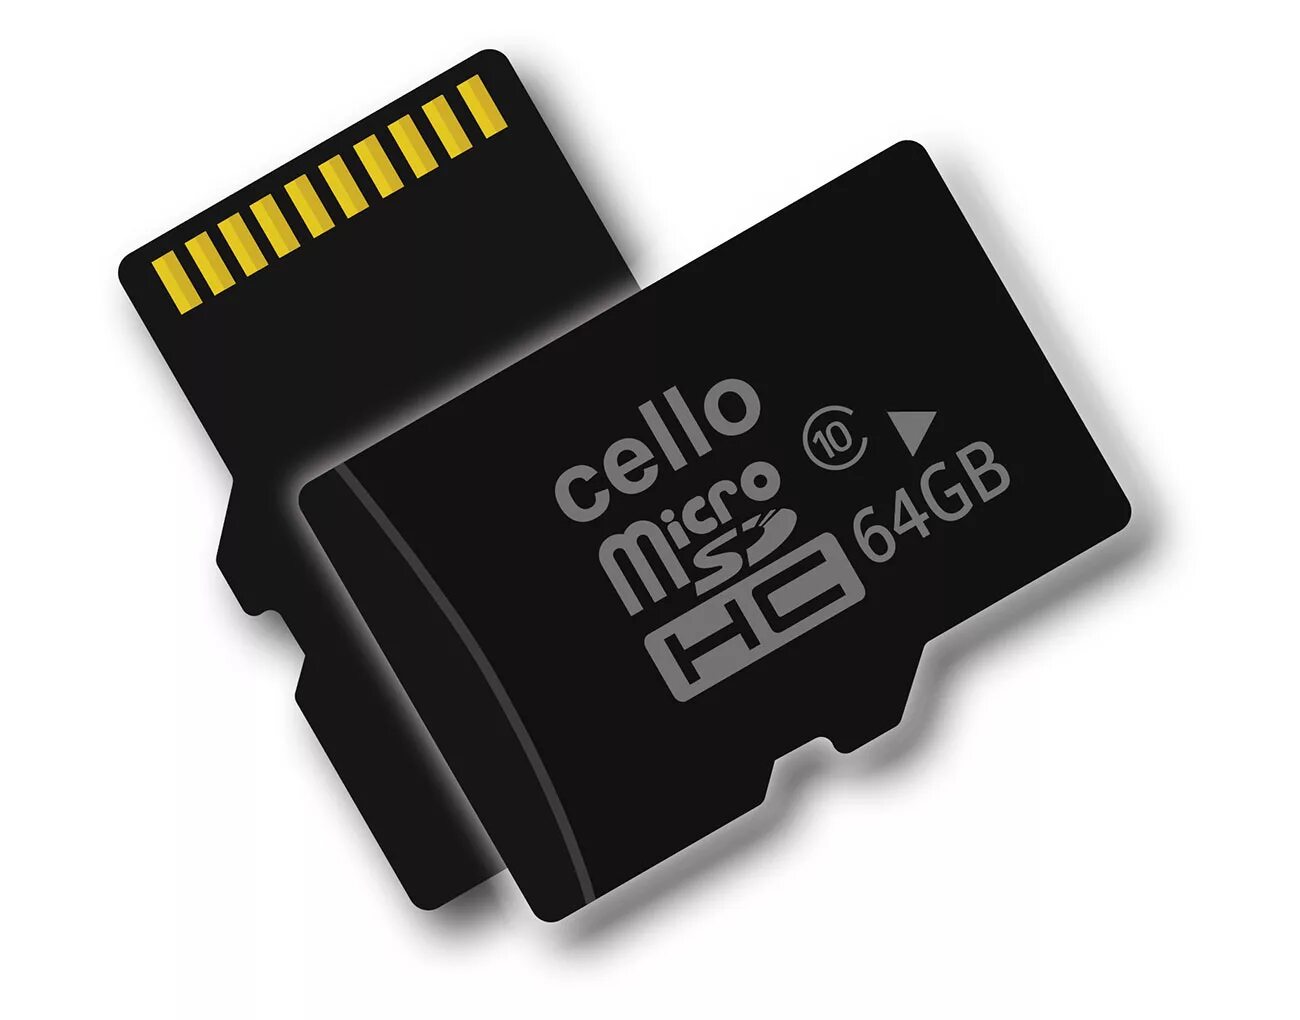 Микро сиди карта. Флешка 64 ГБ микро SD. SD Card 64 GB. Карты памяти SD SDHC MMC. Netac MICROSD 64gb.